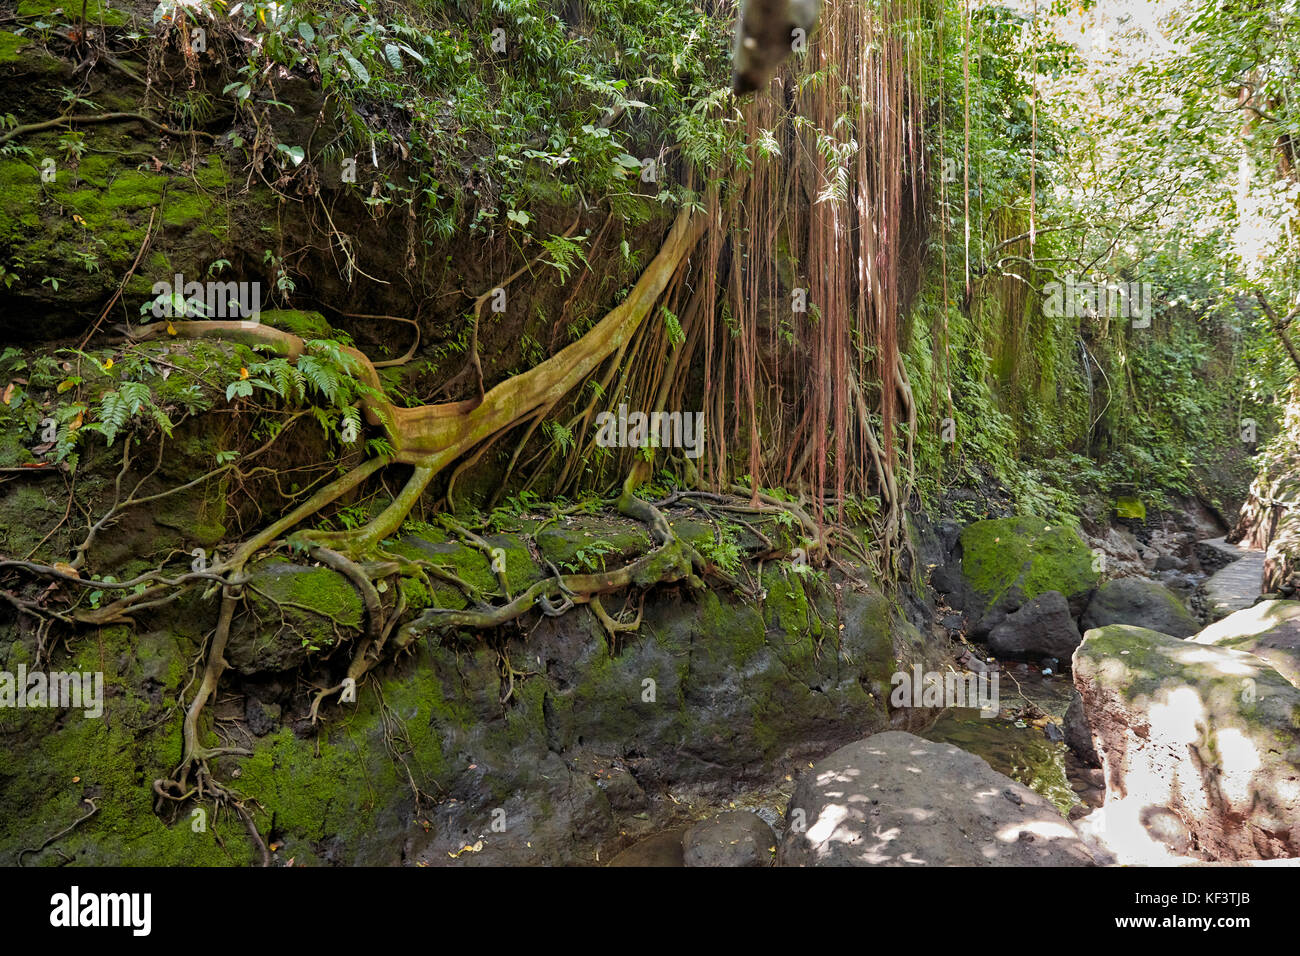 Sacred Monkey Forest Sanctuary. Ubud, Bali, Indonesia. Stock Photo